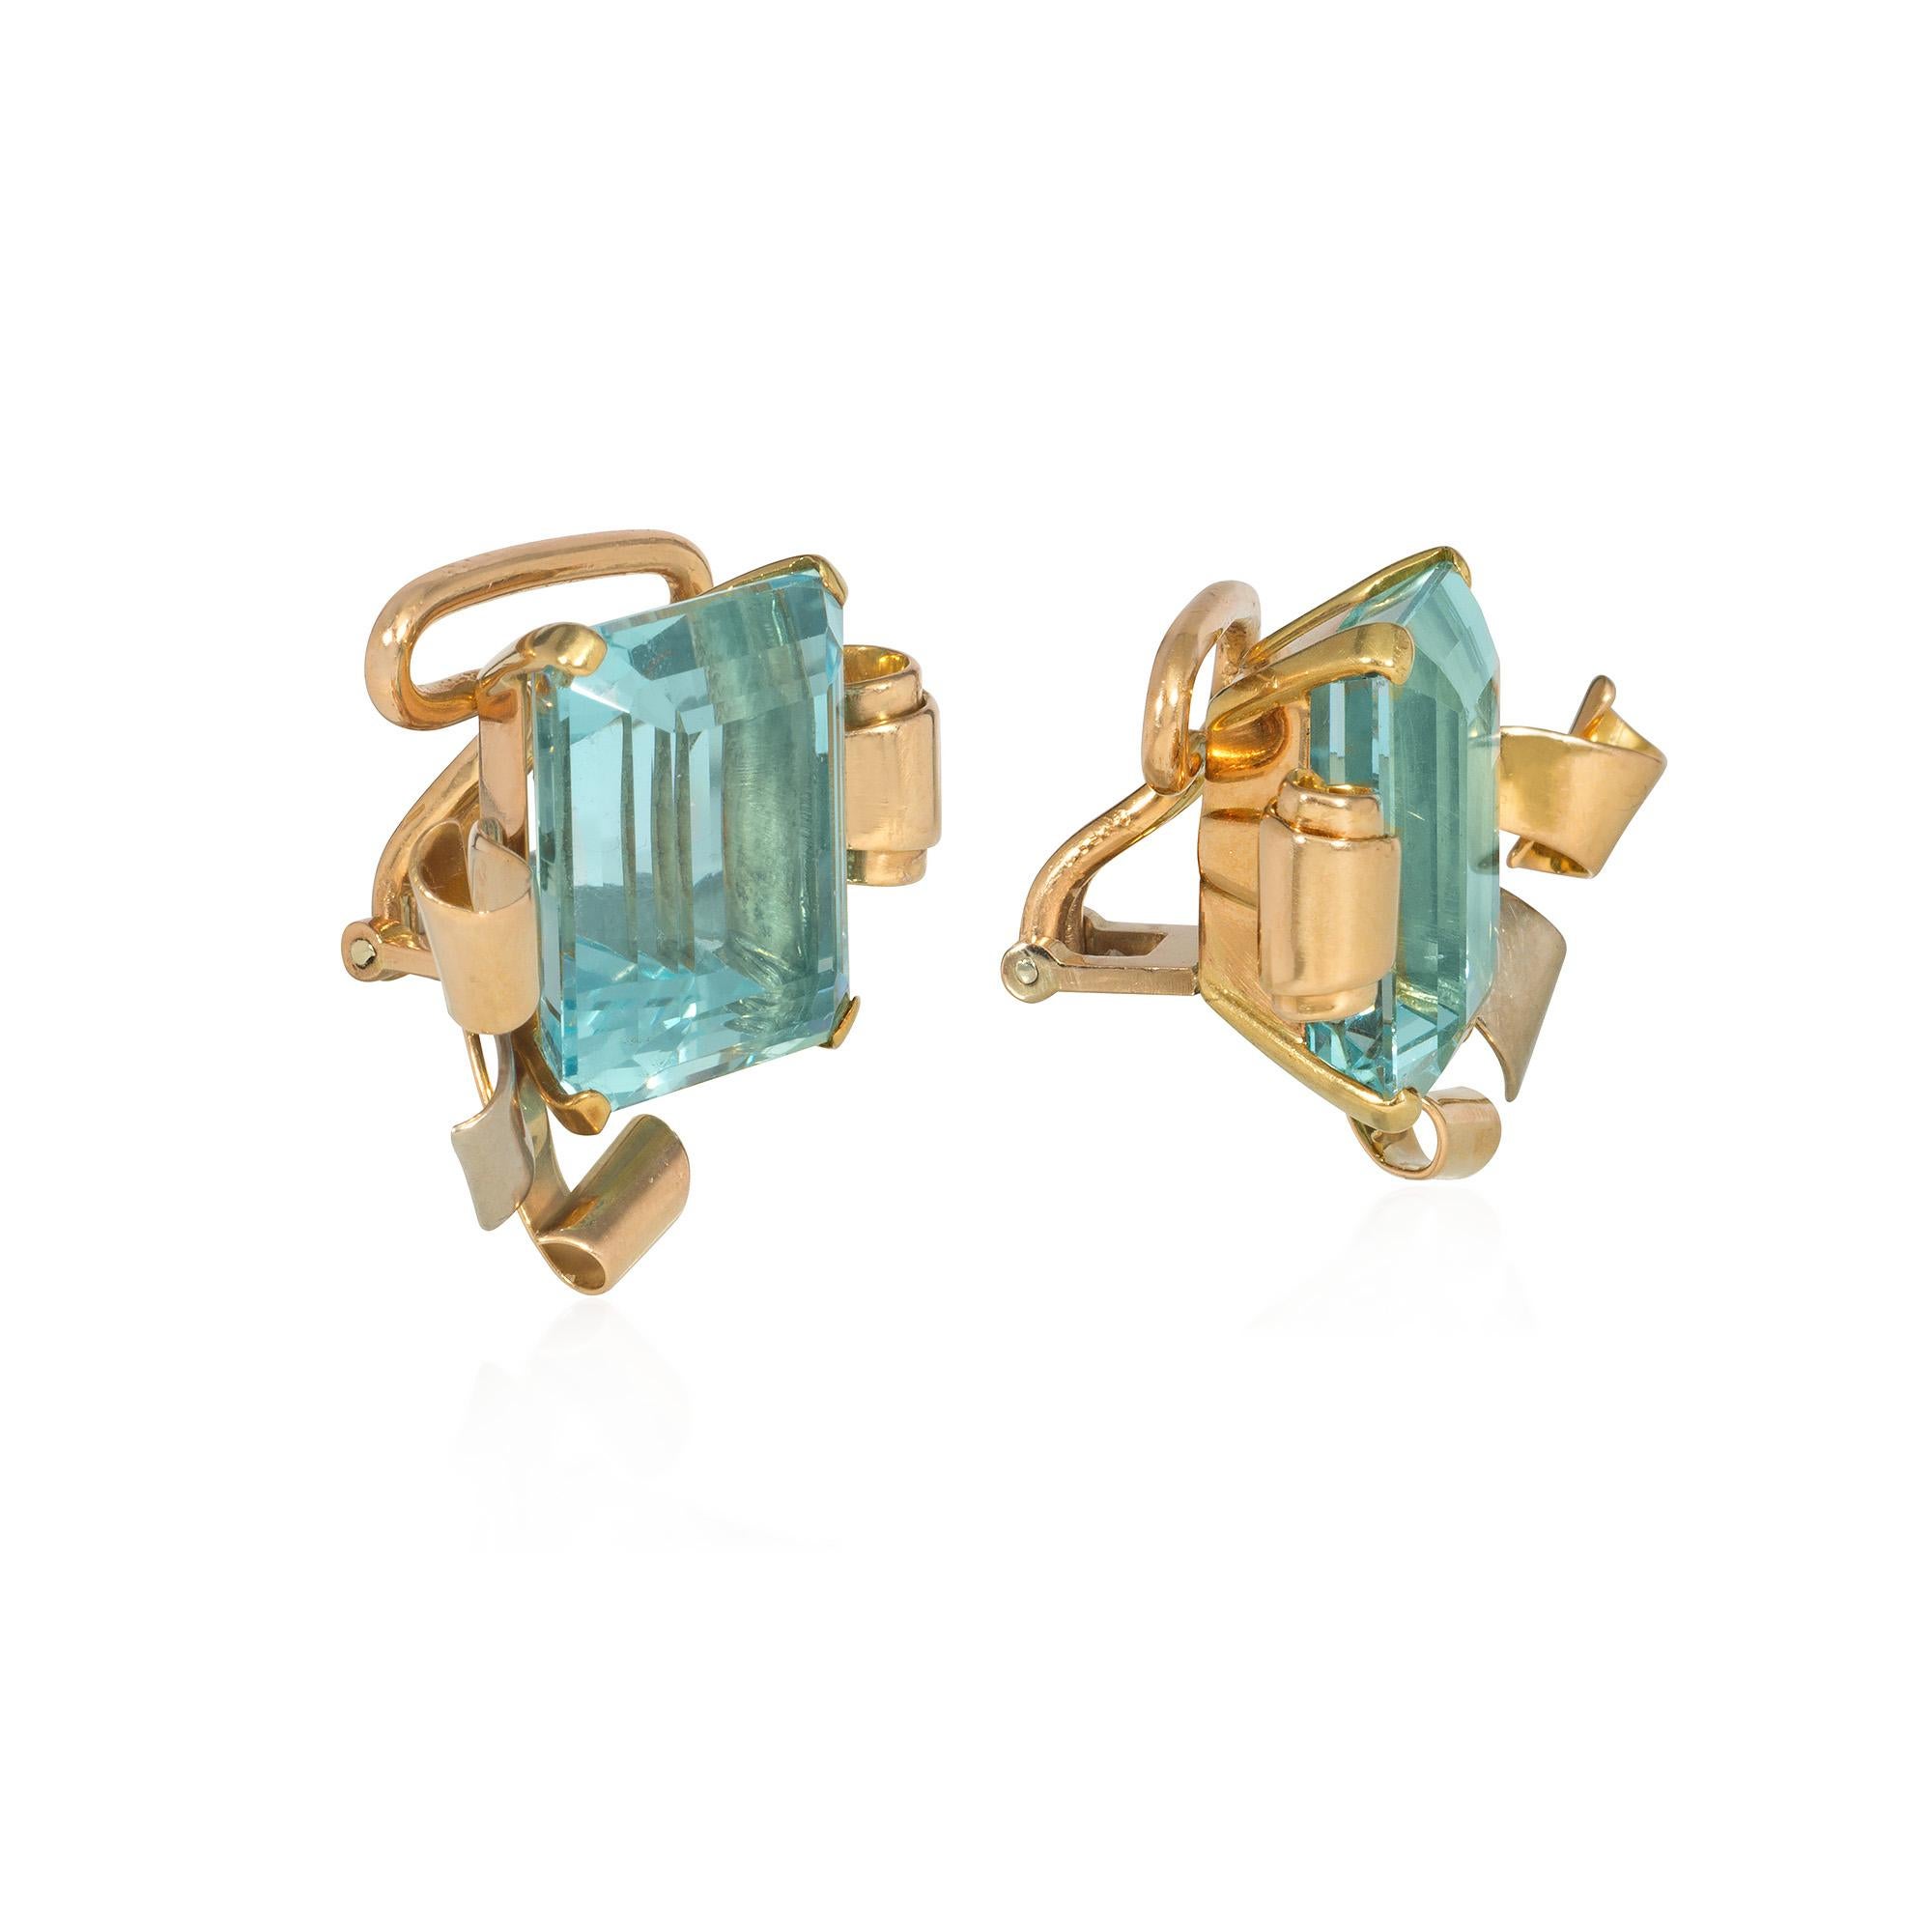 Ein Paar Retro-Aquamarin- und Dreifarben-Gold-Clip-Ohrringe mit großen Aquamarinen im Smaragdschliff in Goldfassungen, die mit verschlungenen, bandartigen Elementen aus Gelb-, Weiß- und Roségold verziert sind.  Atw zwei Aquamarine 30.00 cts.

*